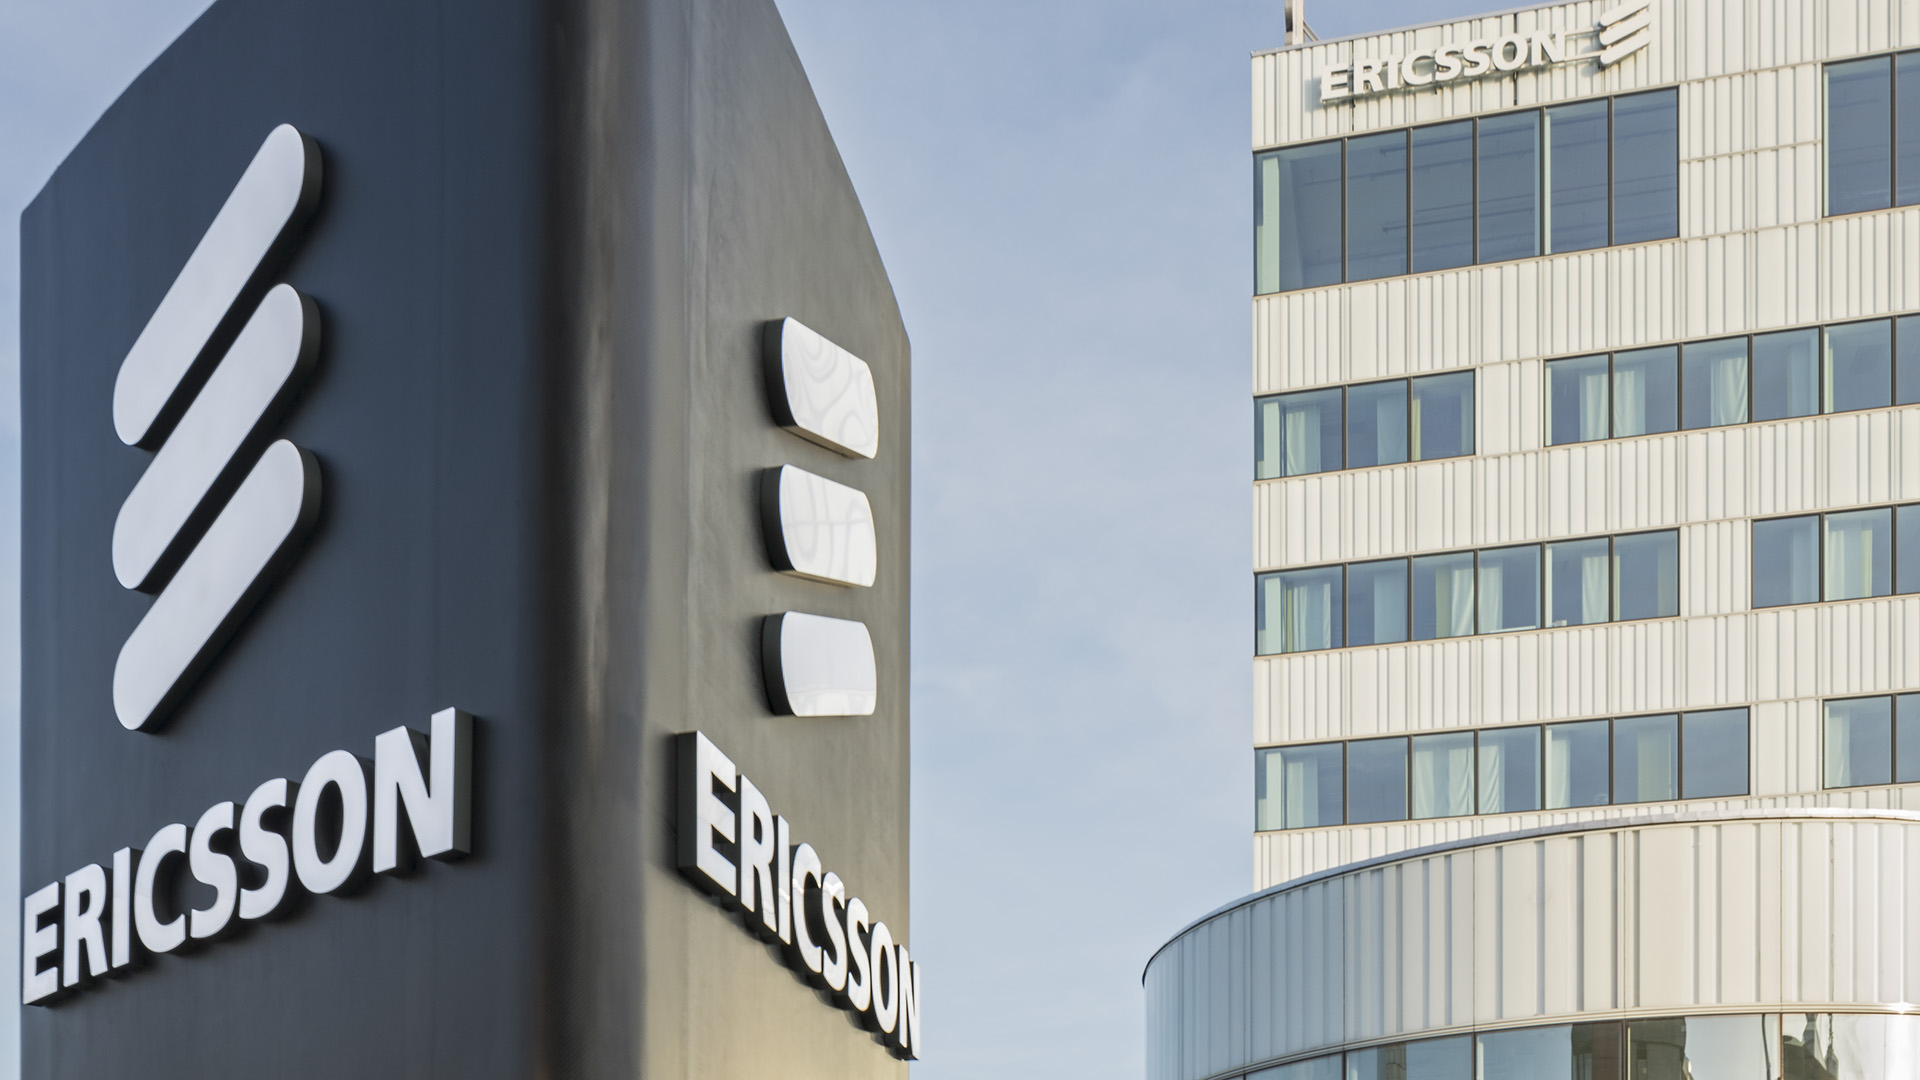 Ericsson estime le marché 5G grand public à 31 trillions de dollars d'ici 2030